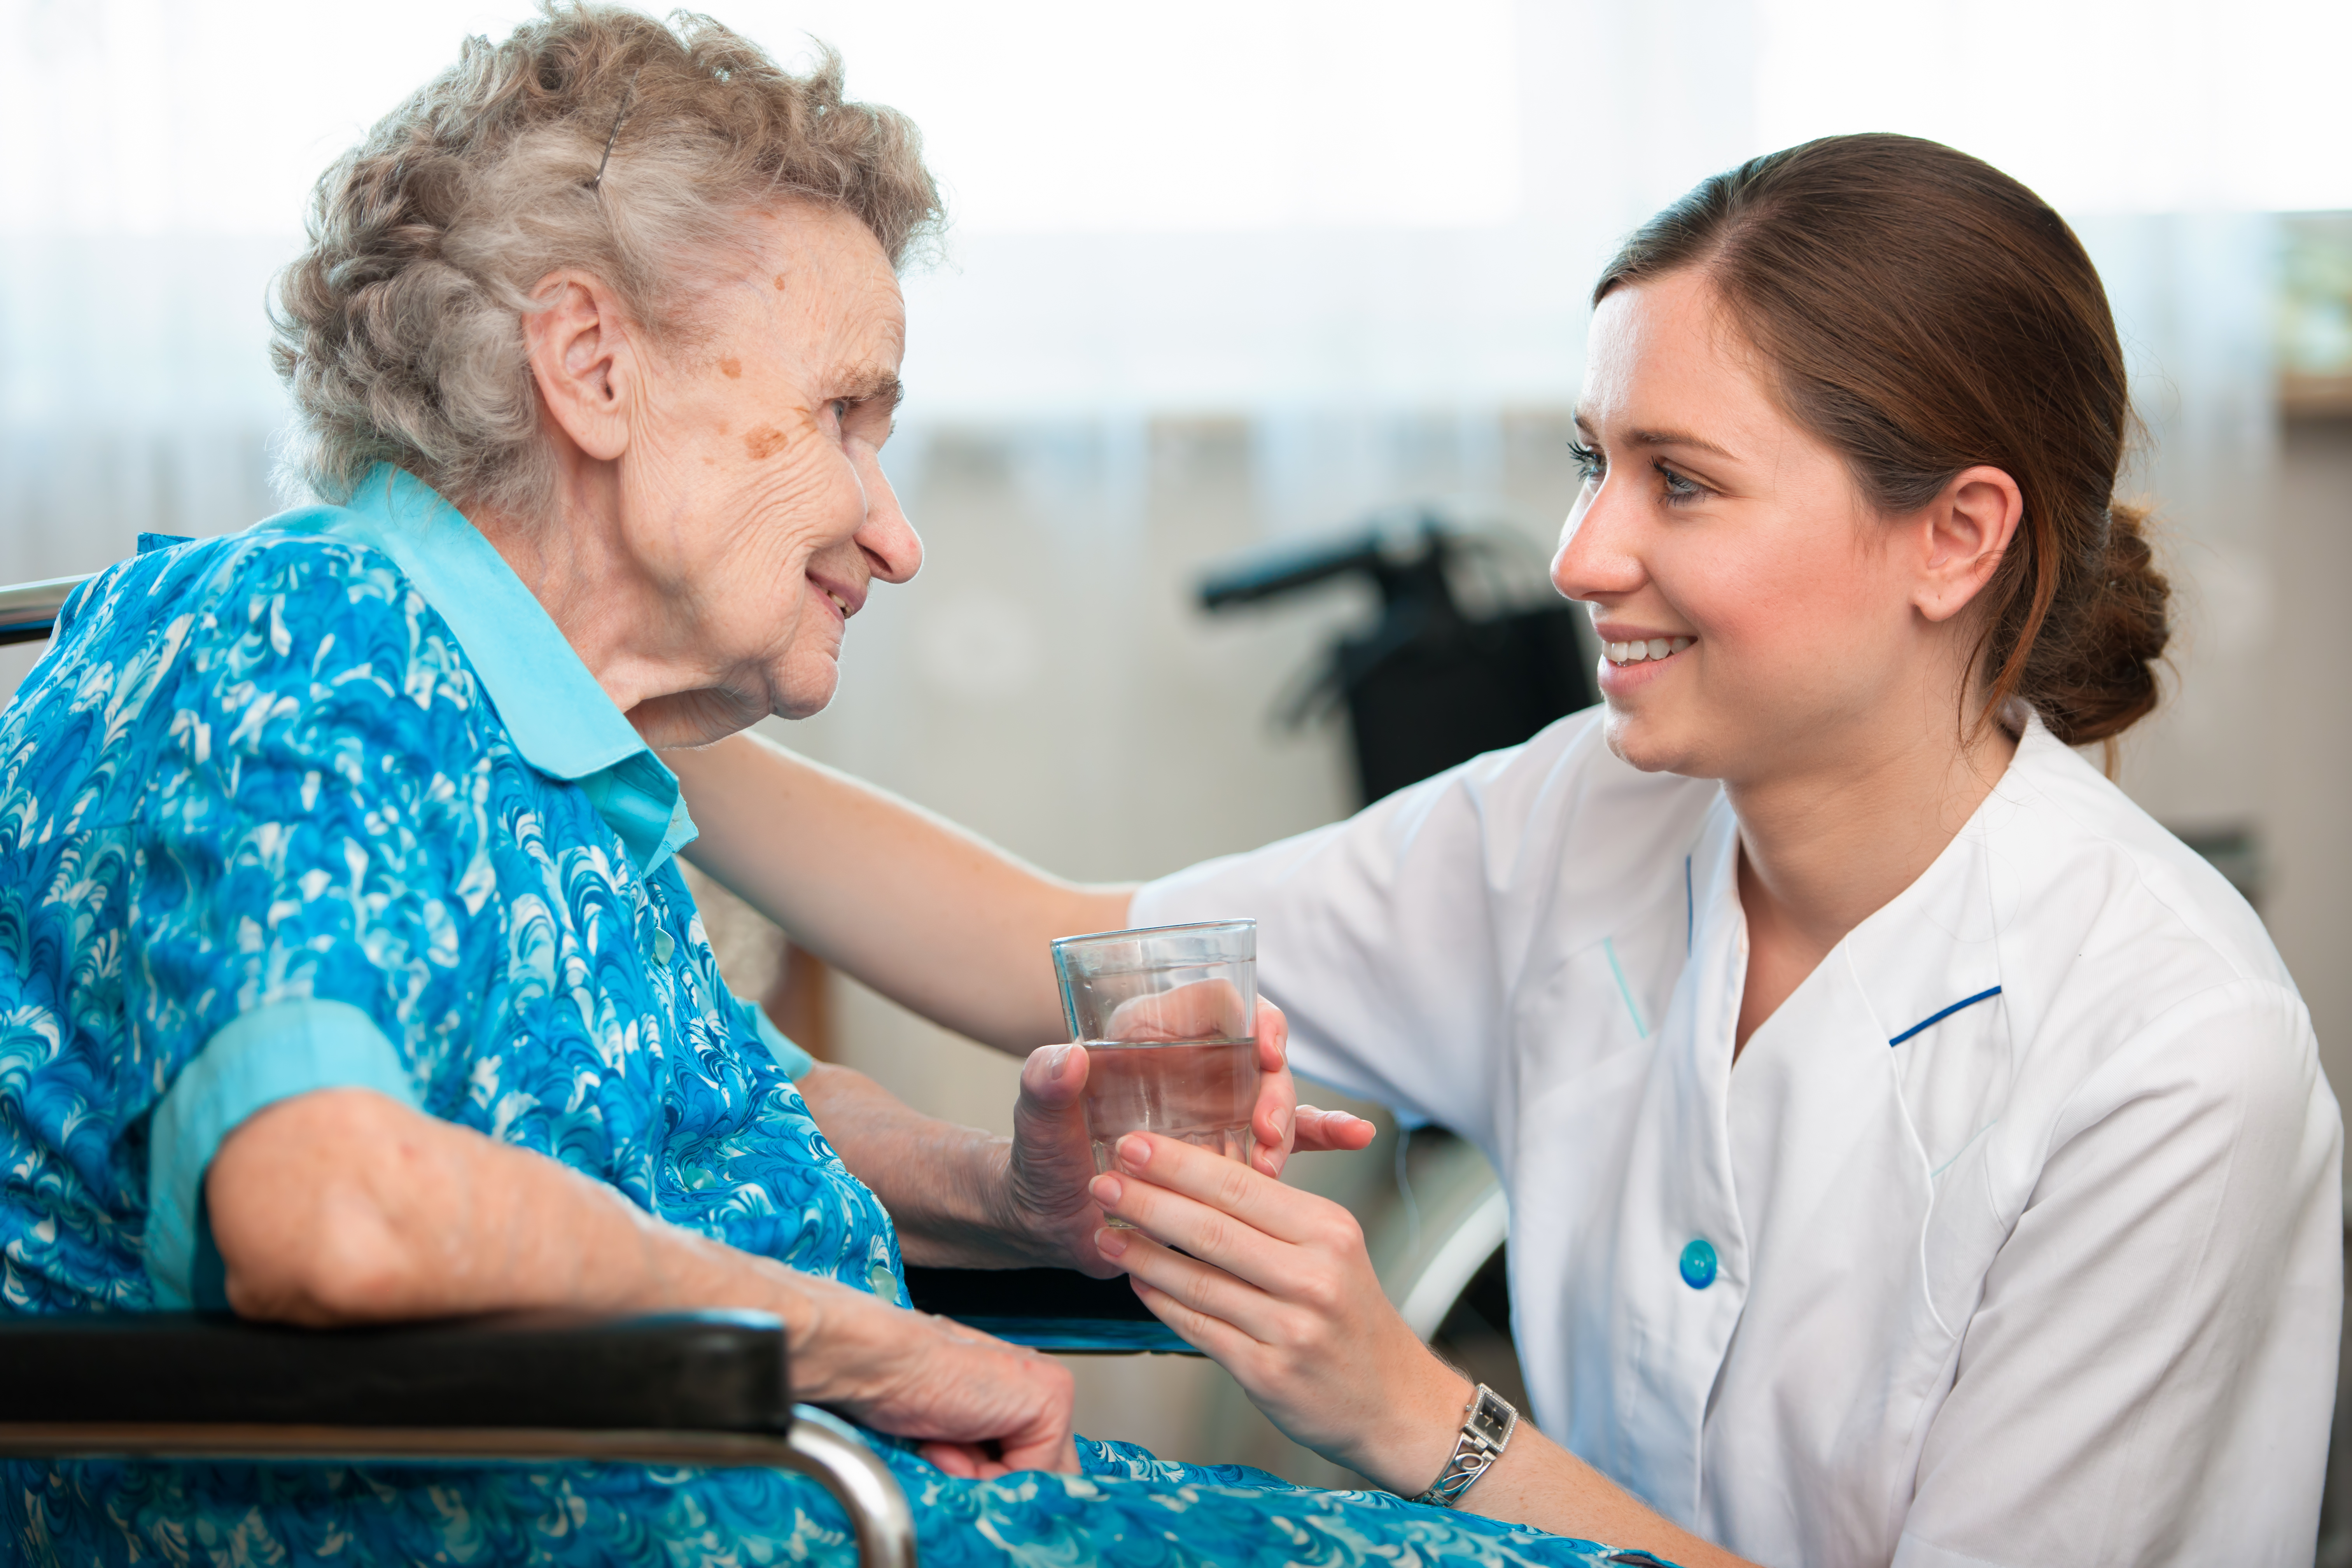 Women assisting elderly women - Shutterstock